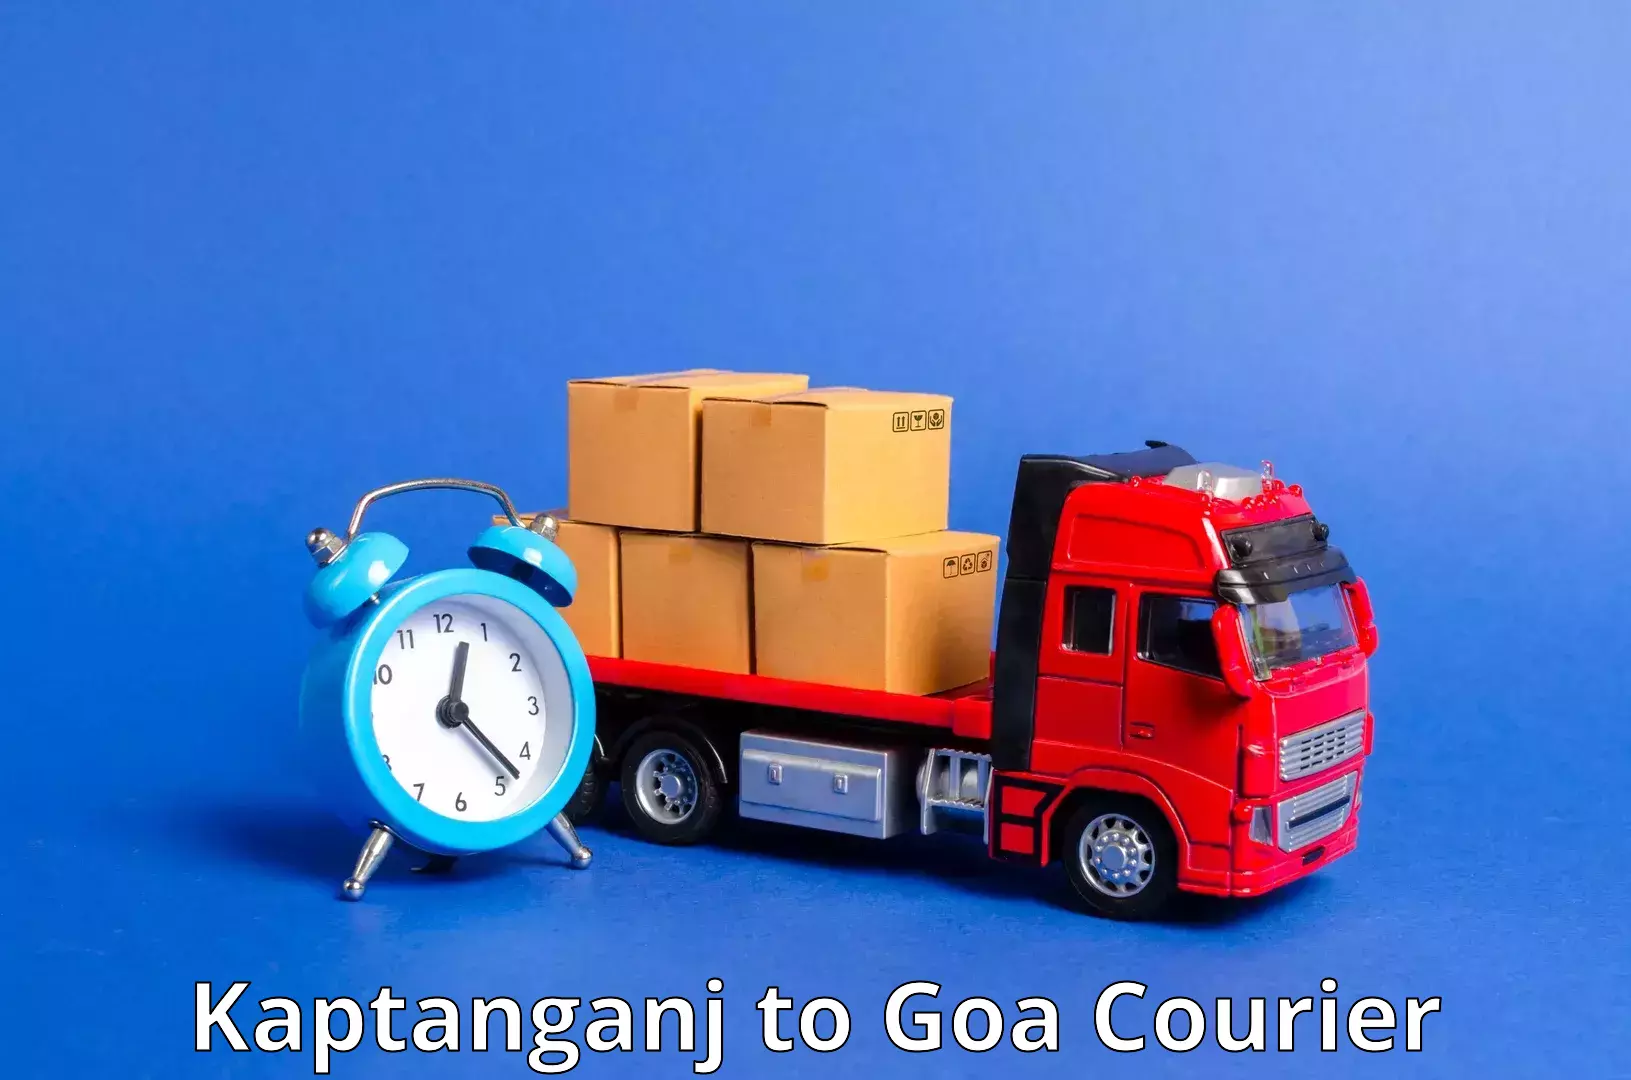 24/7 courier service Kaptanganj to Goa